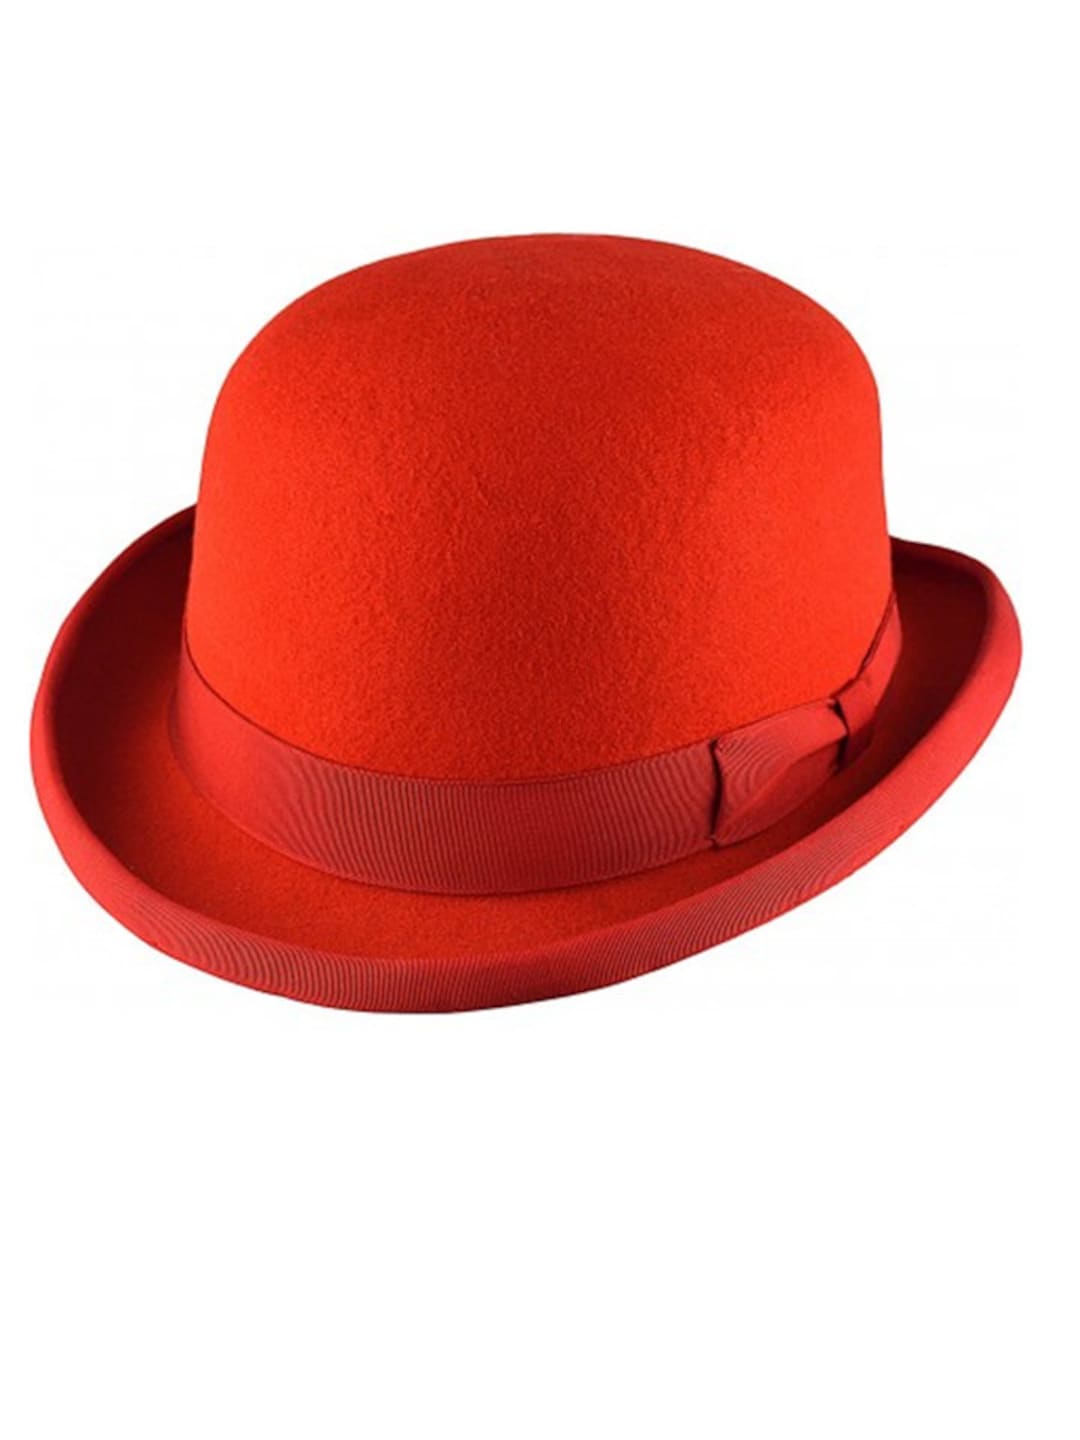 Red Bowler Hat Derby Bowler Hats Wool Derby Hats Sombreros De Copa ...